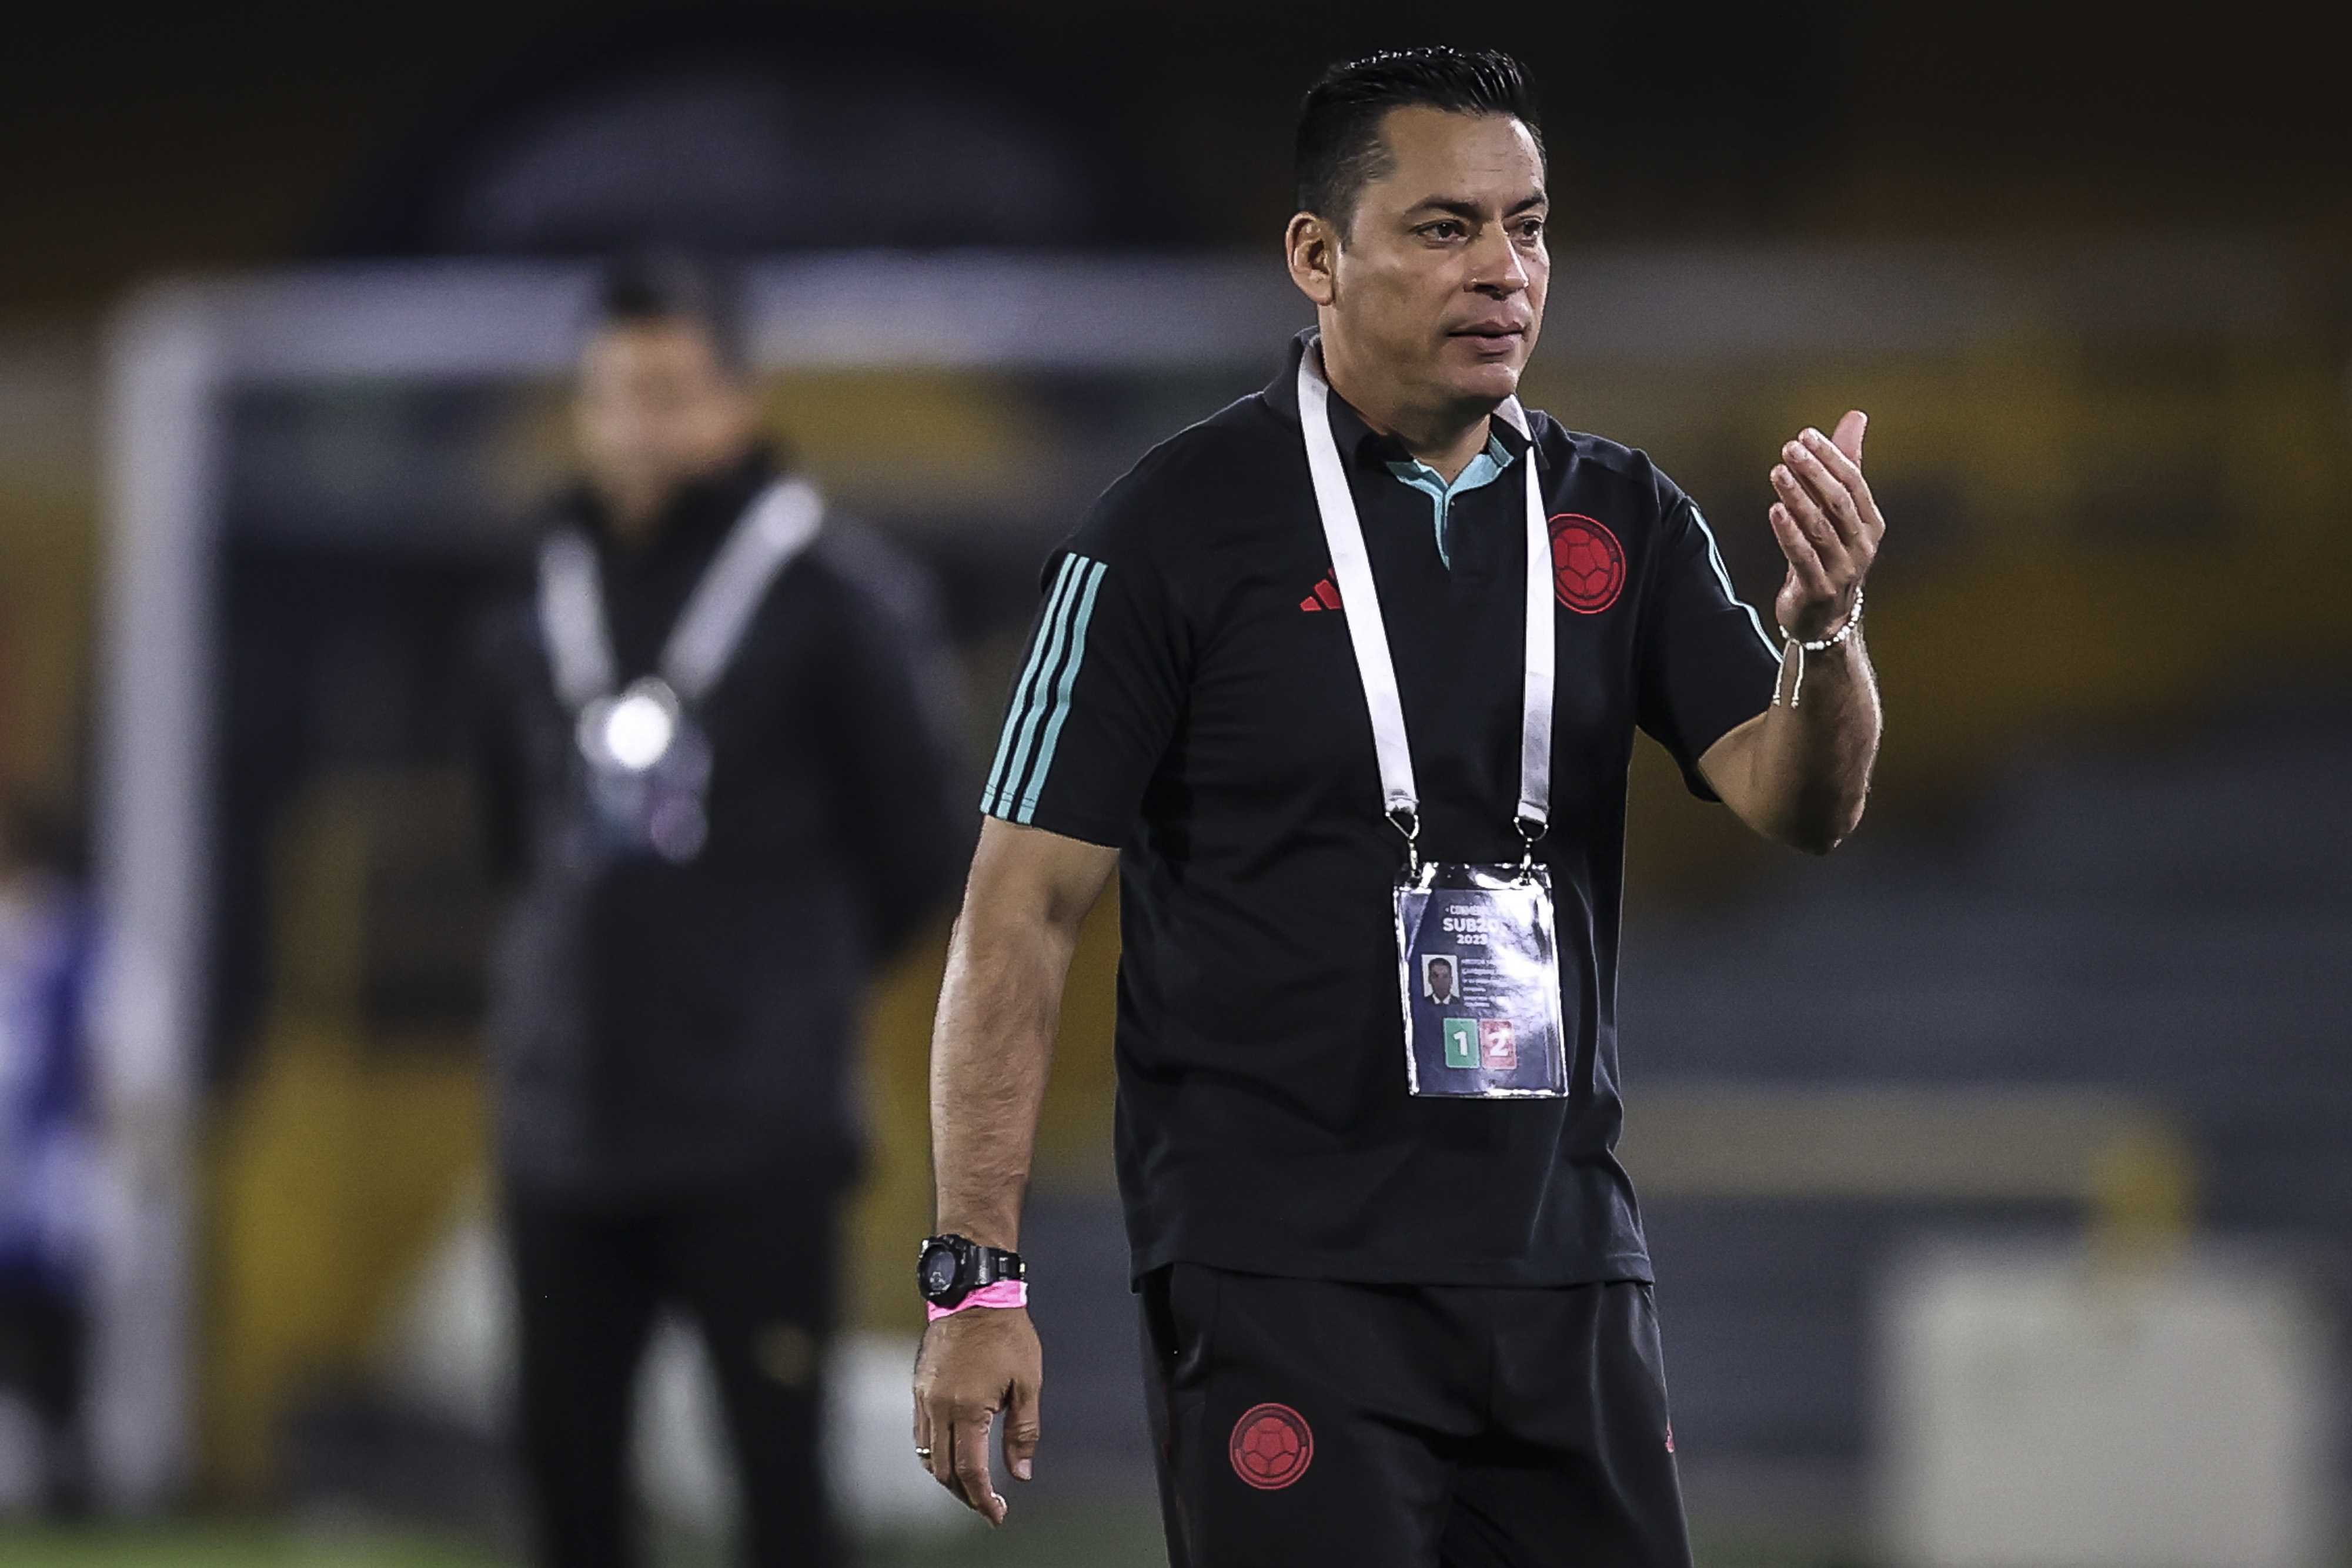 Técnico de la selección Colombia molesto con los fichajes de jugadores en pleno Sudamericano: “Nunca antes lo había visto”